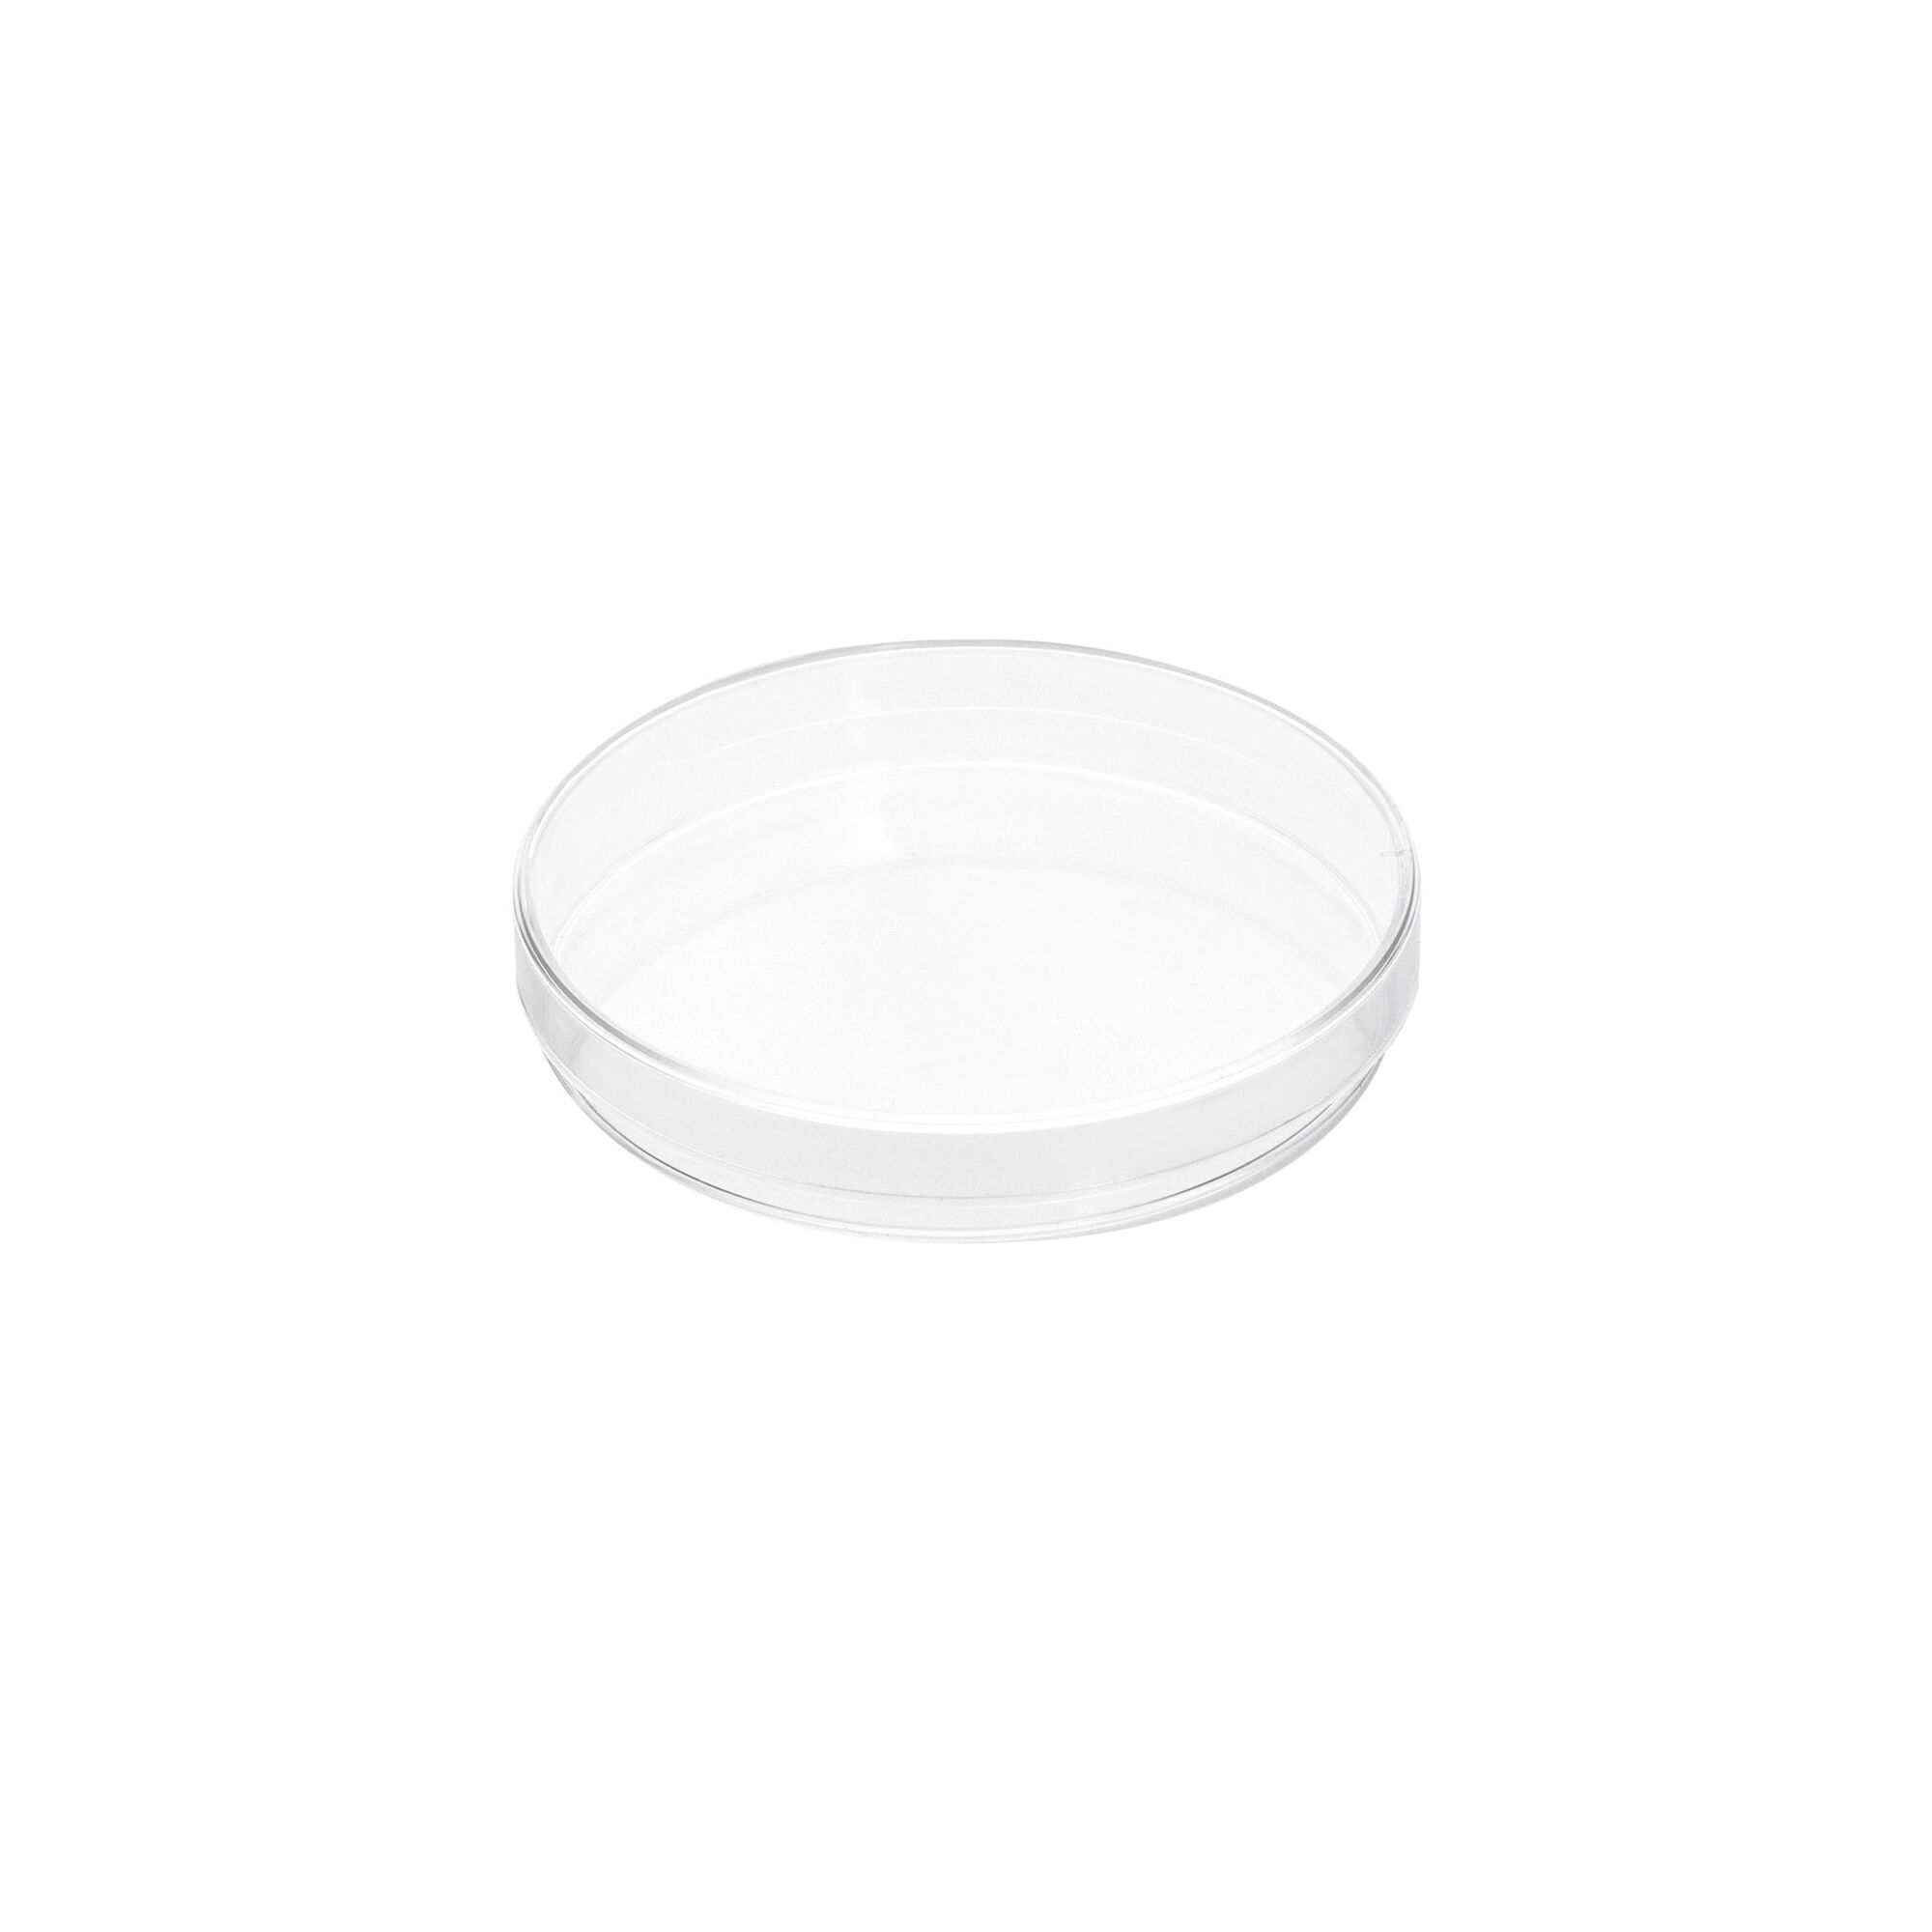 Чашка Петри полистирол, 90х15 мм, 1 шт., стерильная, пластиковая 2